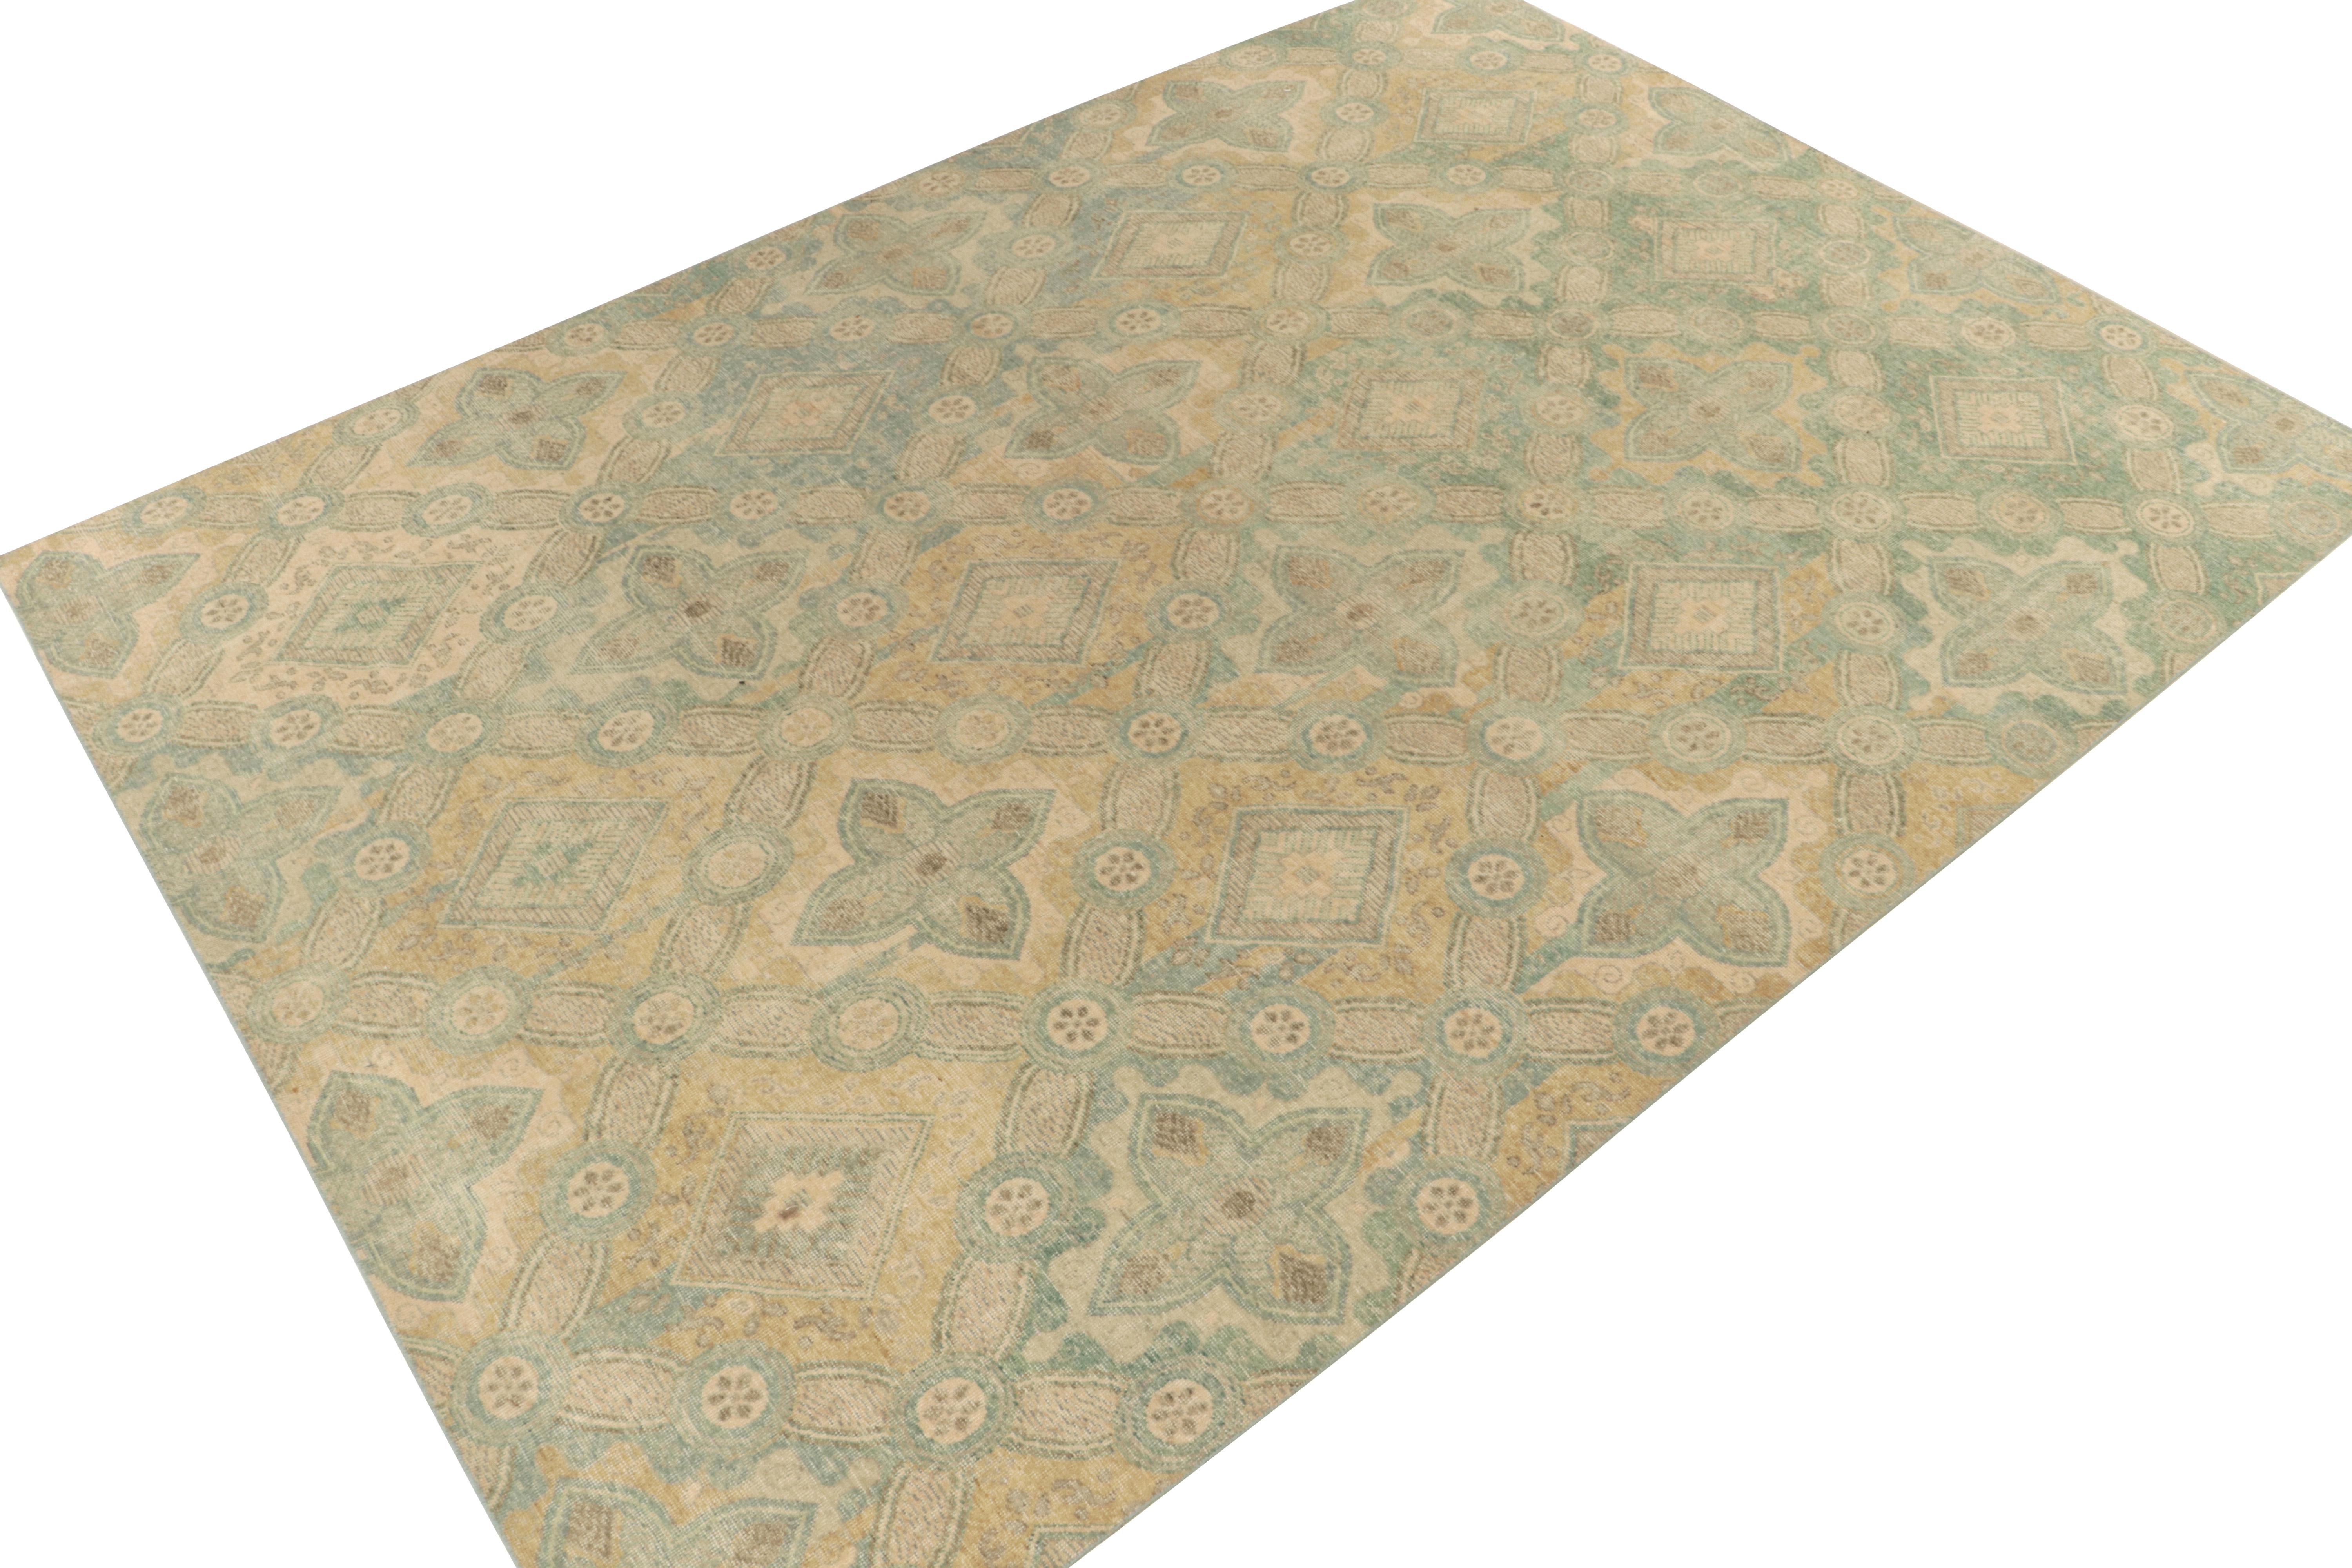 Dieser 10x14 große, handgeknüpfte Teppich aus unserer Hommage-Kollektion hat eine subtile, aber dennoch eindrucksvolle Ausstrahlung. Die notleidende Vision manifestiert sich mit erhabenen Deko-Mustern, die sich in hellem Grün-Blau und sanftem Gold